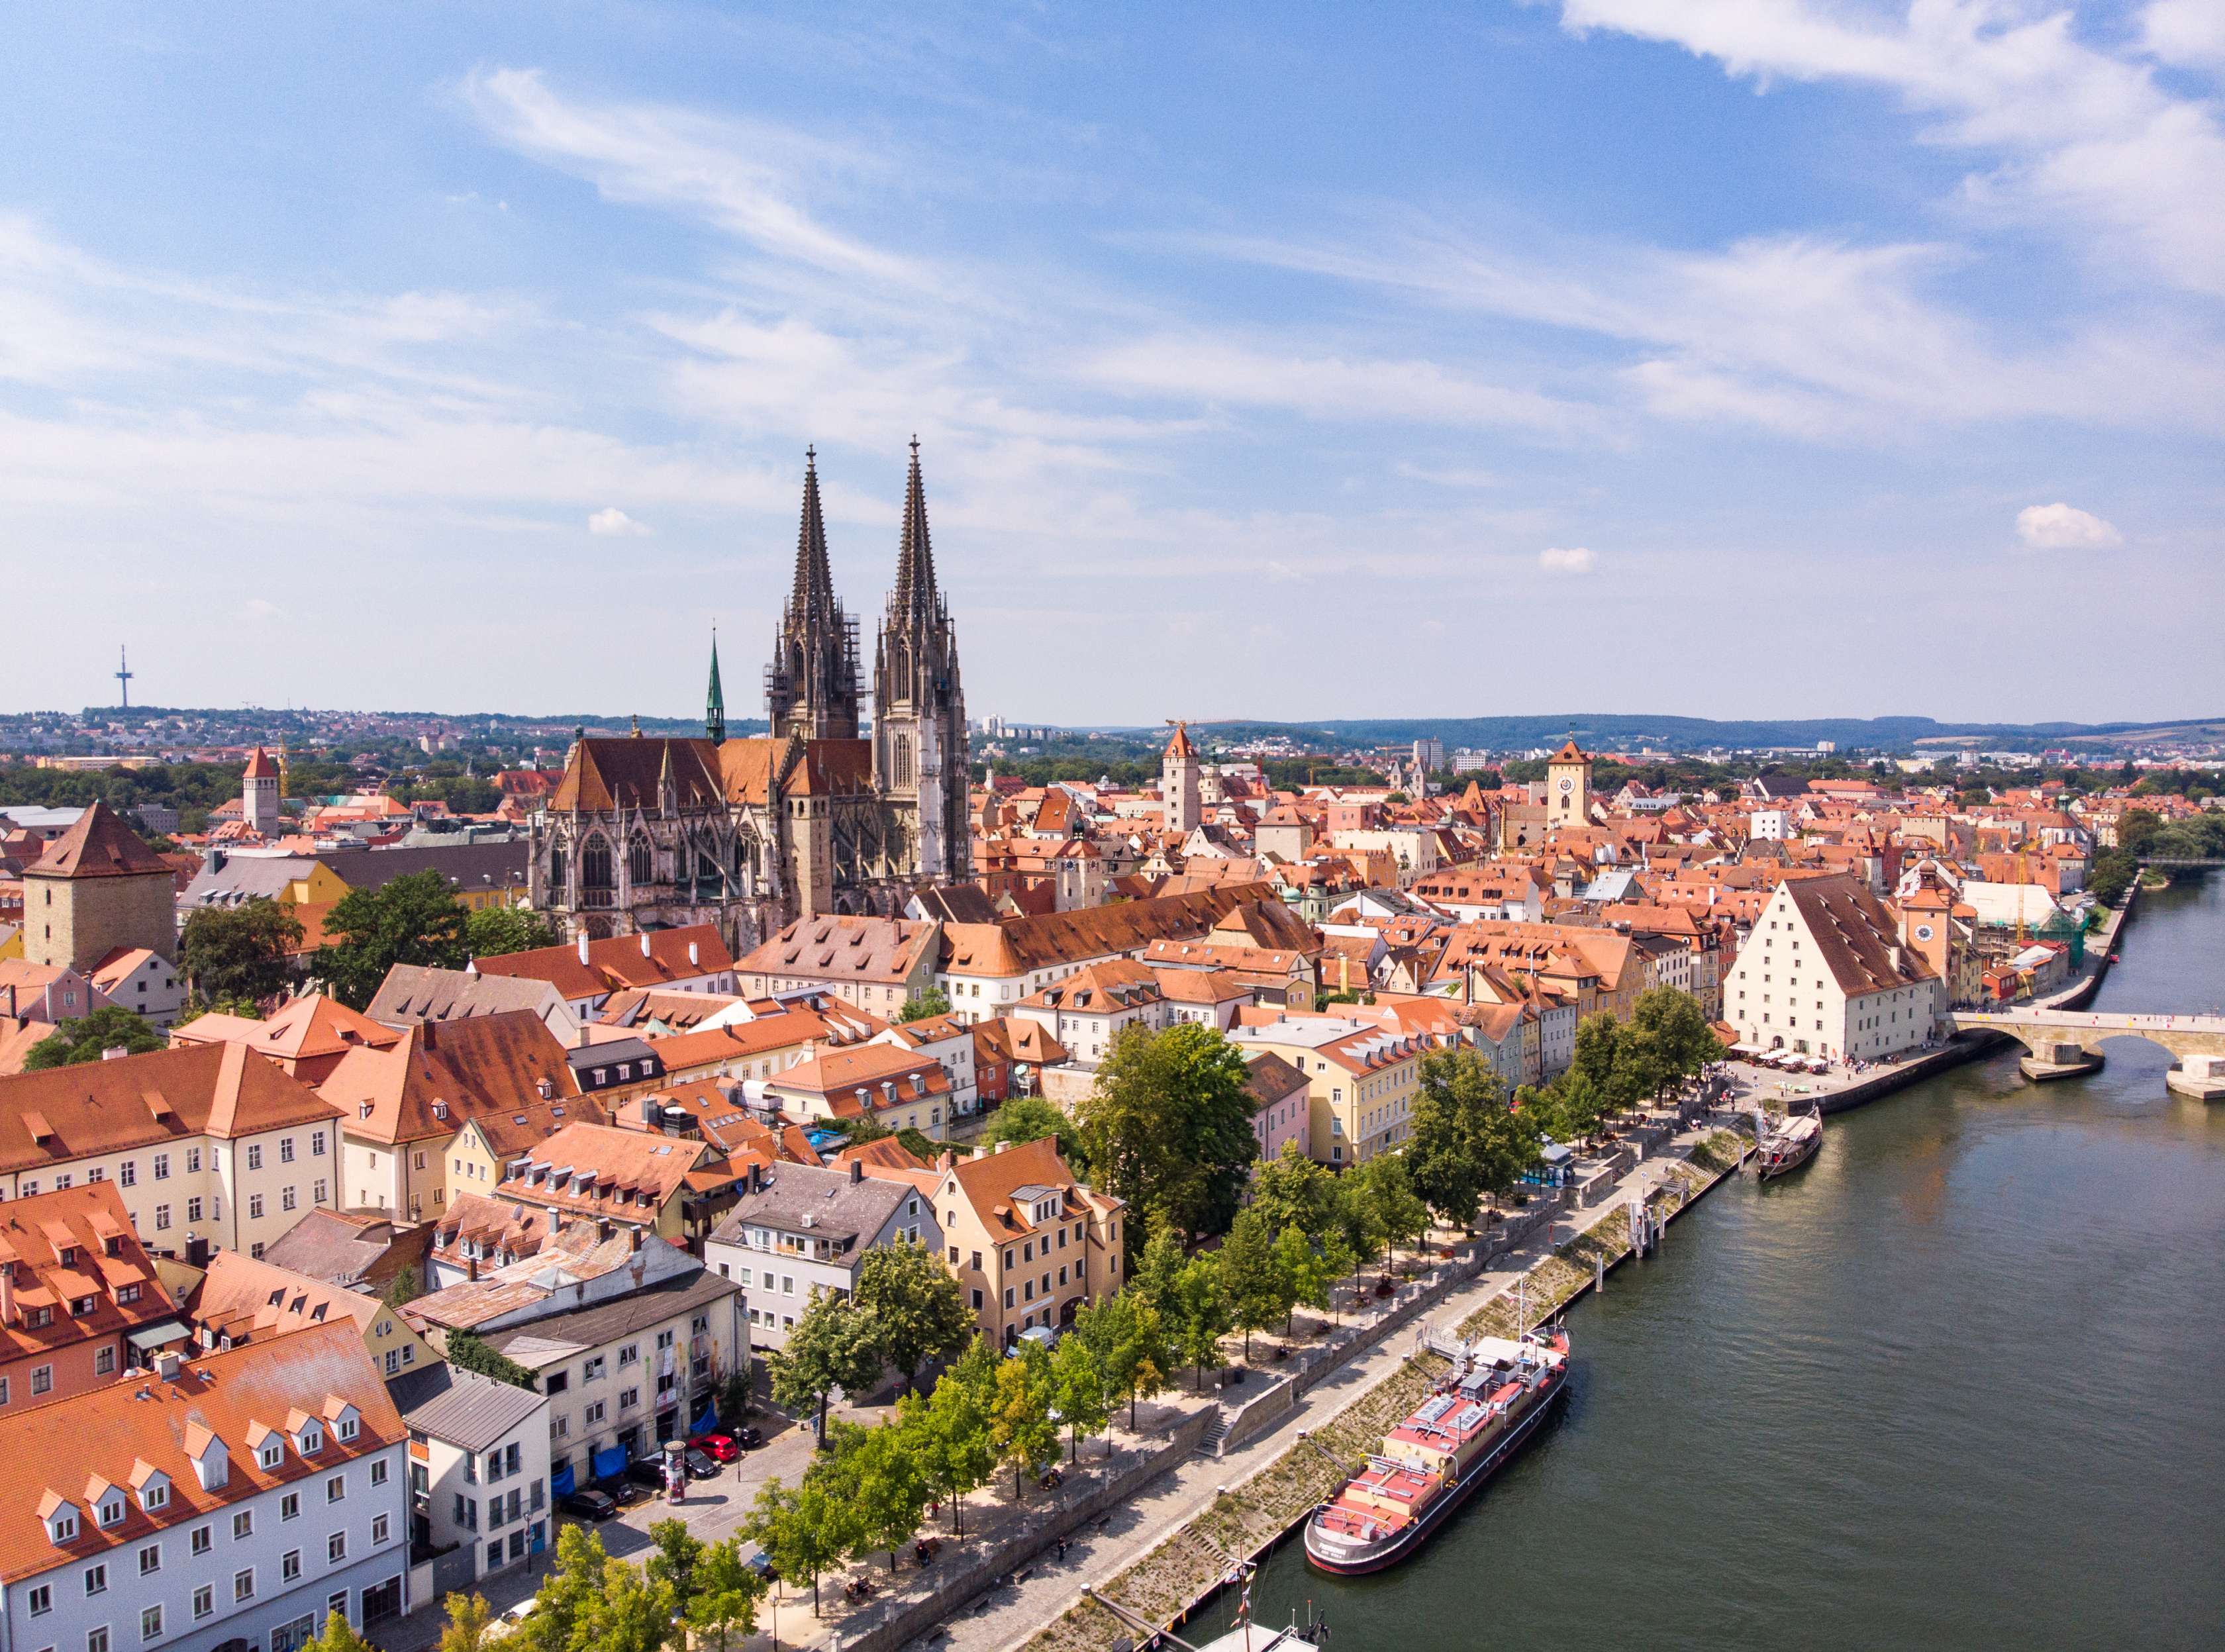 Versicherung in Regensburg: Lassen Sie sich von unseren kompetenten Experten beraten